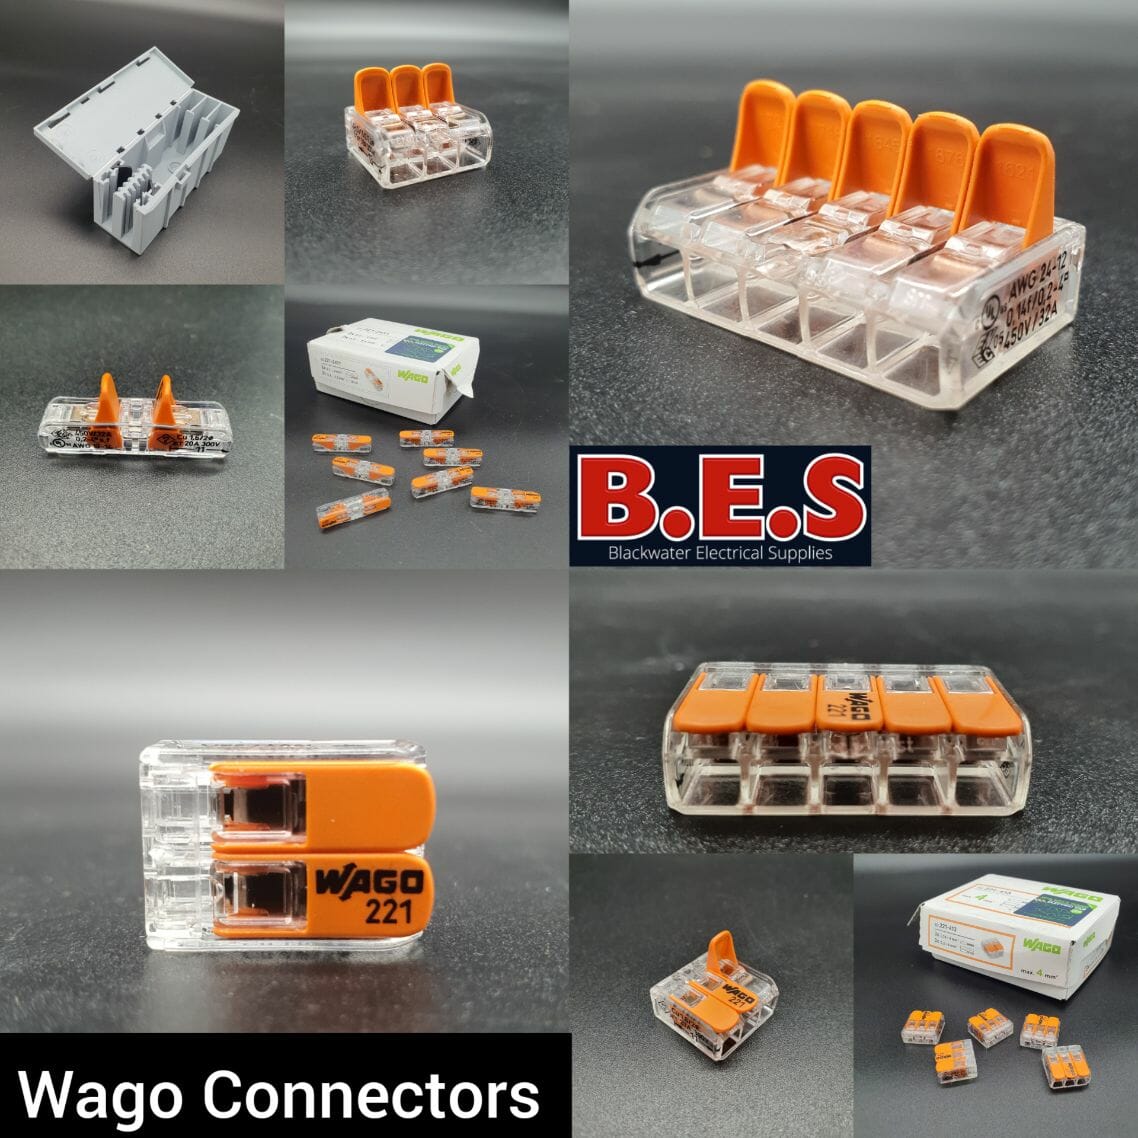 WAGO CONNECTORS